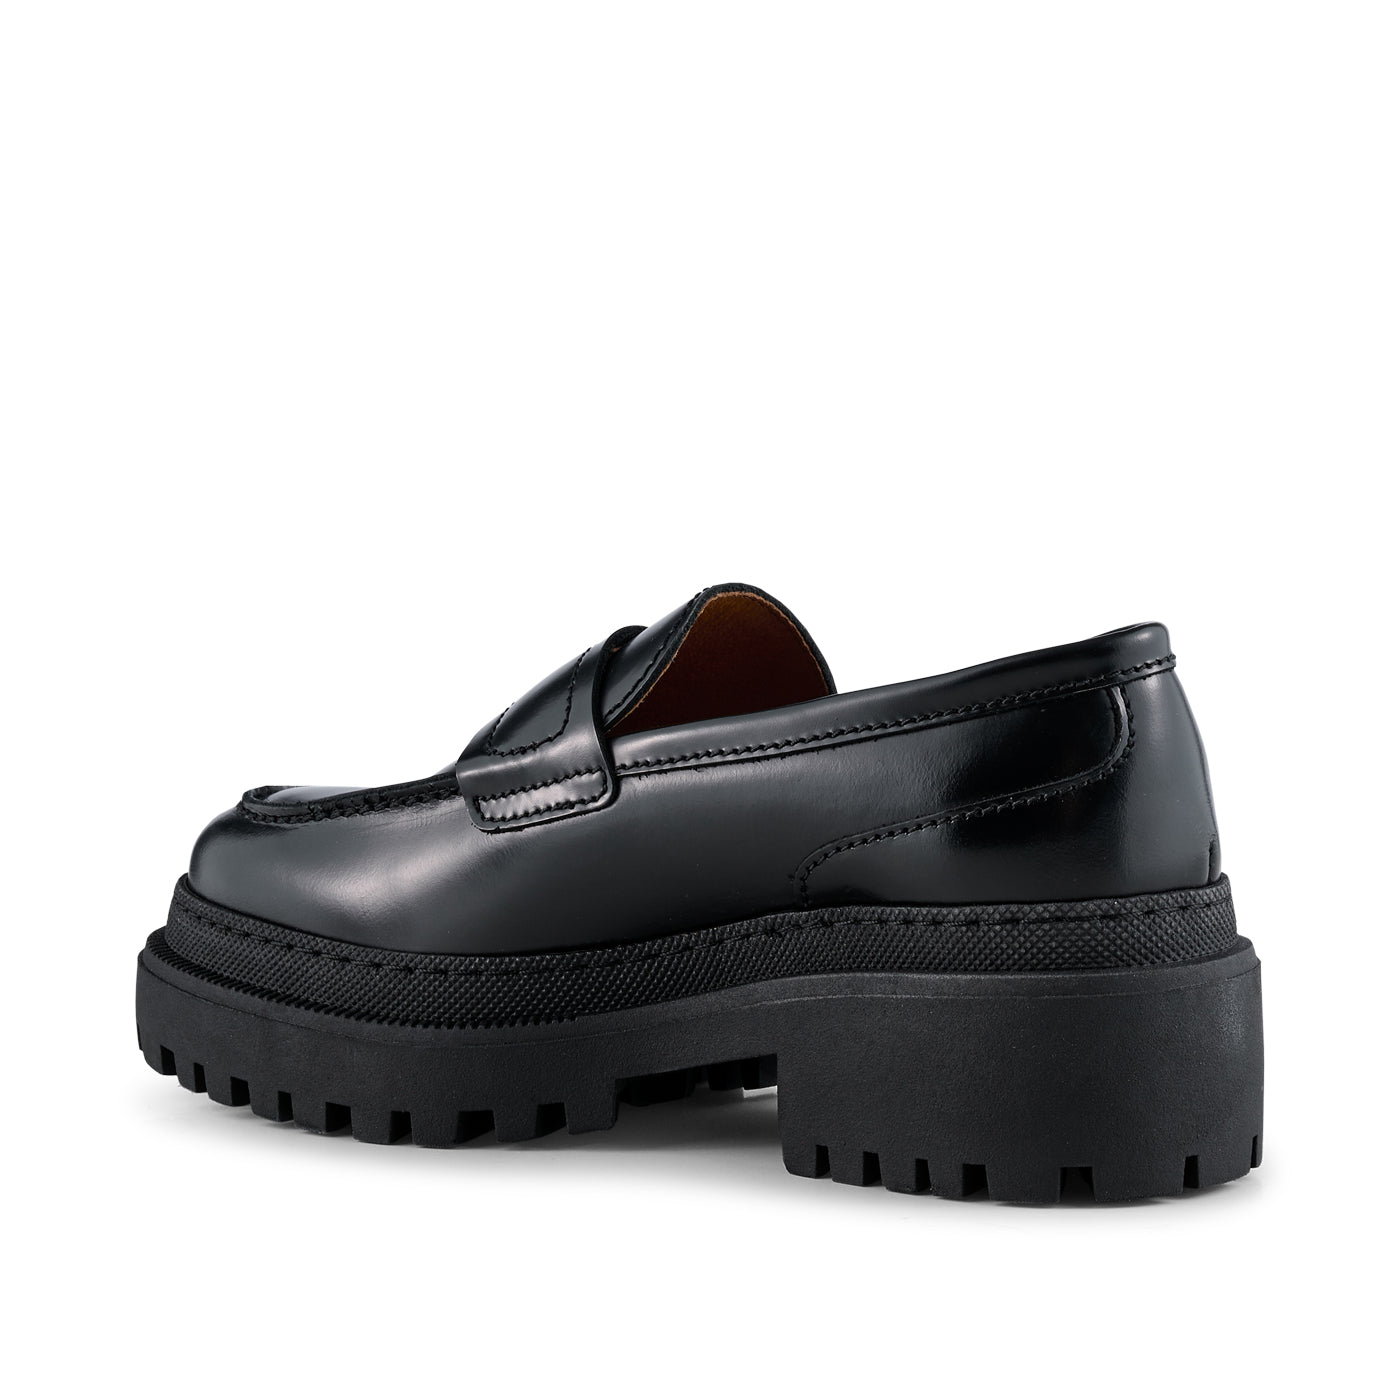 SHOE THE BEAR WOMENS Iona loafer læder  Loafers 817 BLACK POLIDO HIGH SHINE